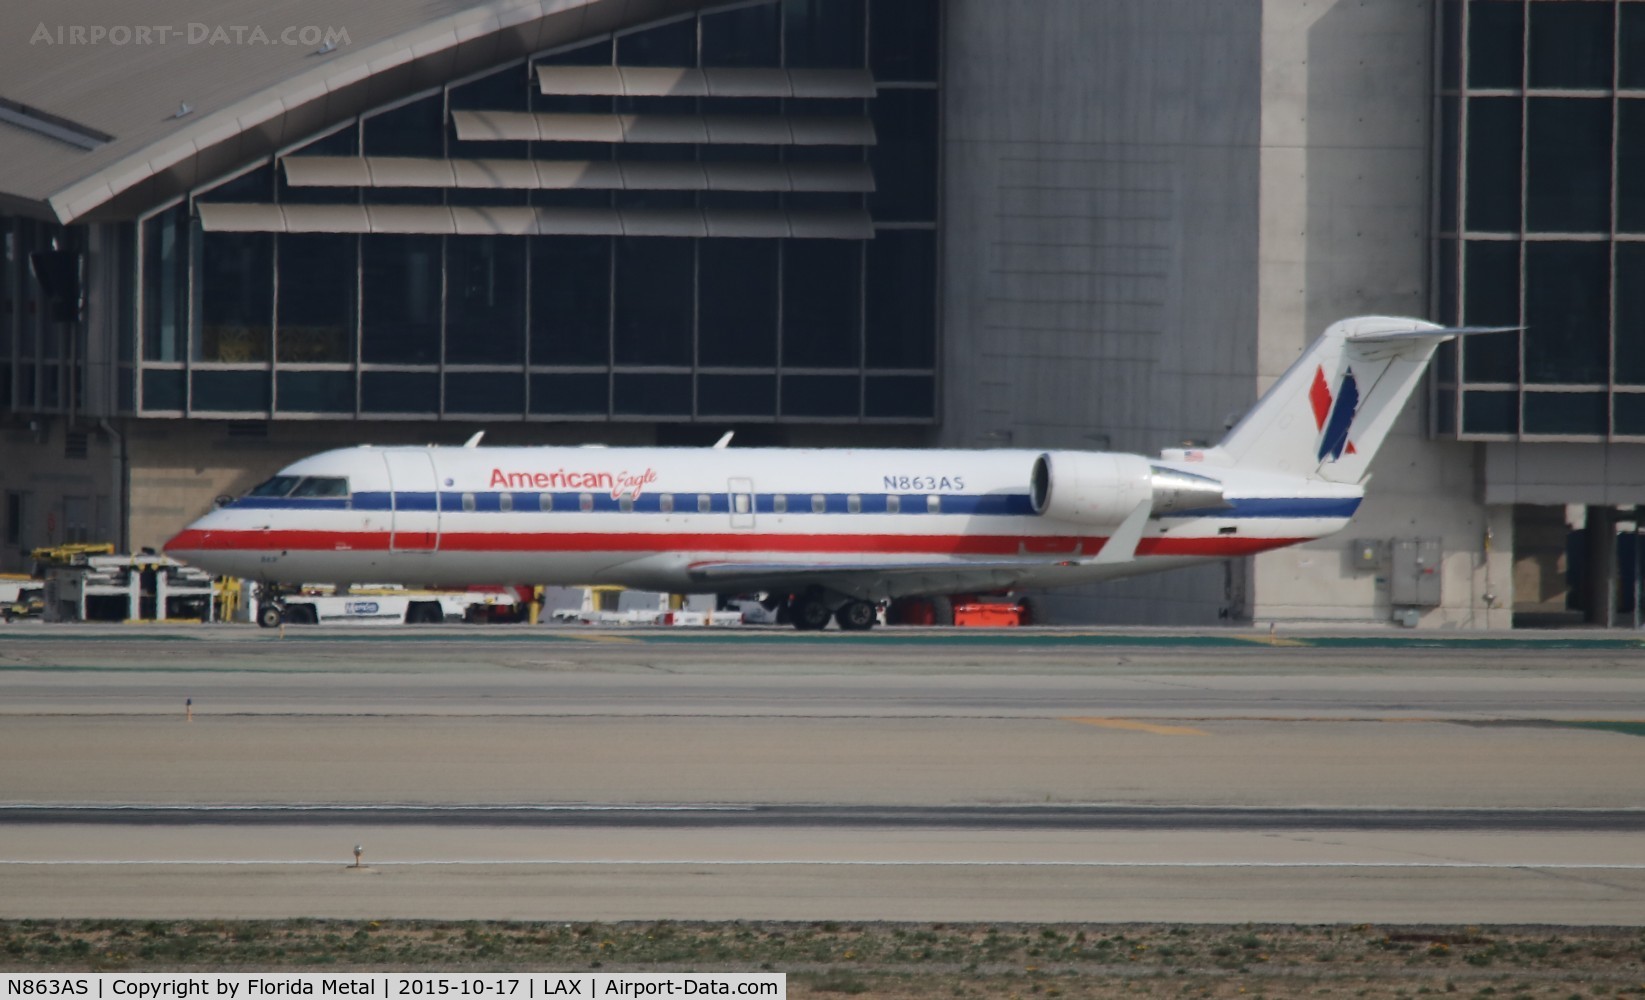 N863AS, 2001 Bombardier CRJ-200ER (CL-600-2B19) C/N 7487, American Eagle